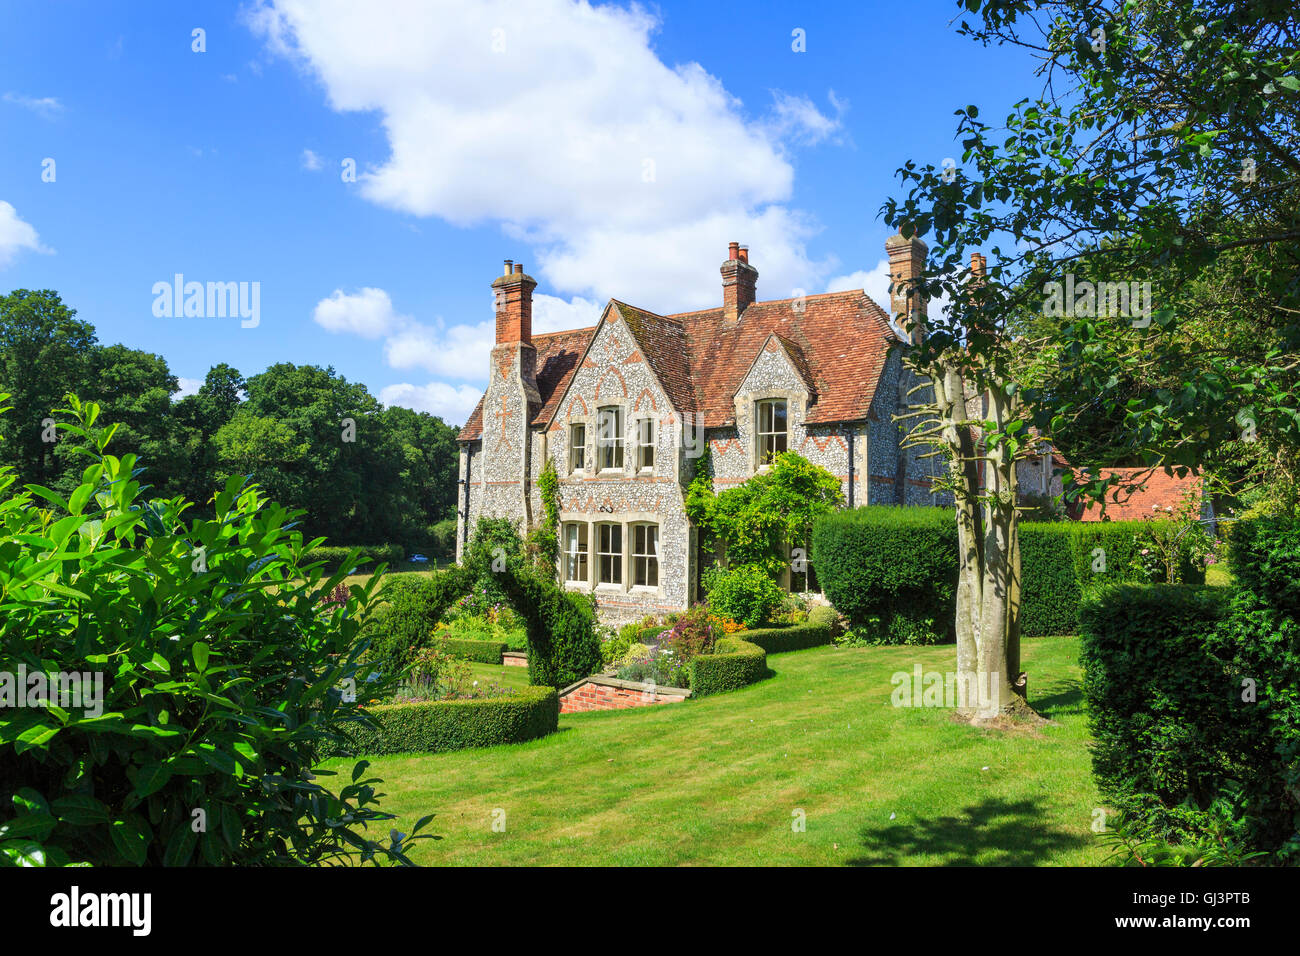 Prime britische Immobilien: Herrliche Feuerstein - Country House Hotel in Fosbury, einem Dorf an der Wiltshire - Hampshire Grenze im Sommer konfrontiert Stockfoto